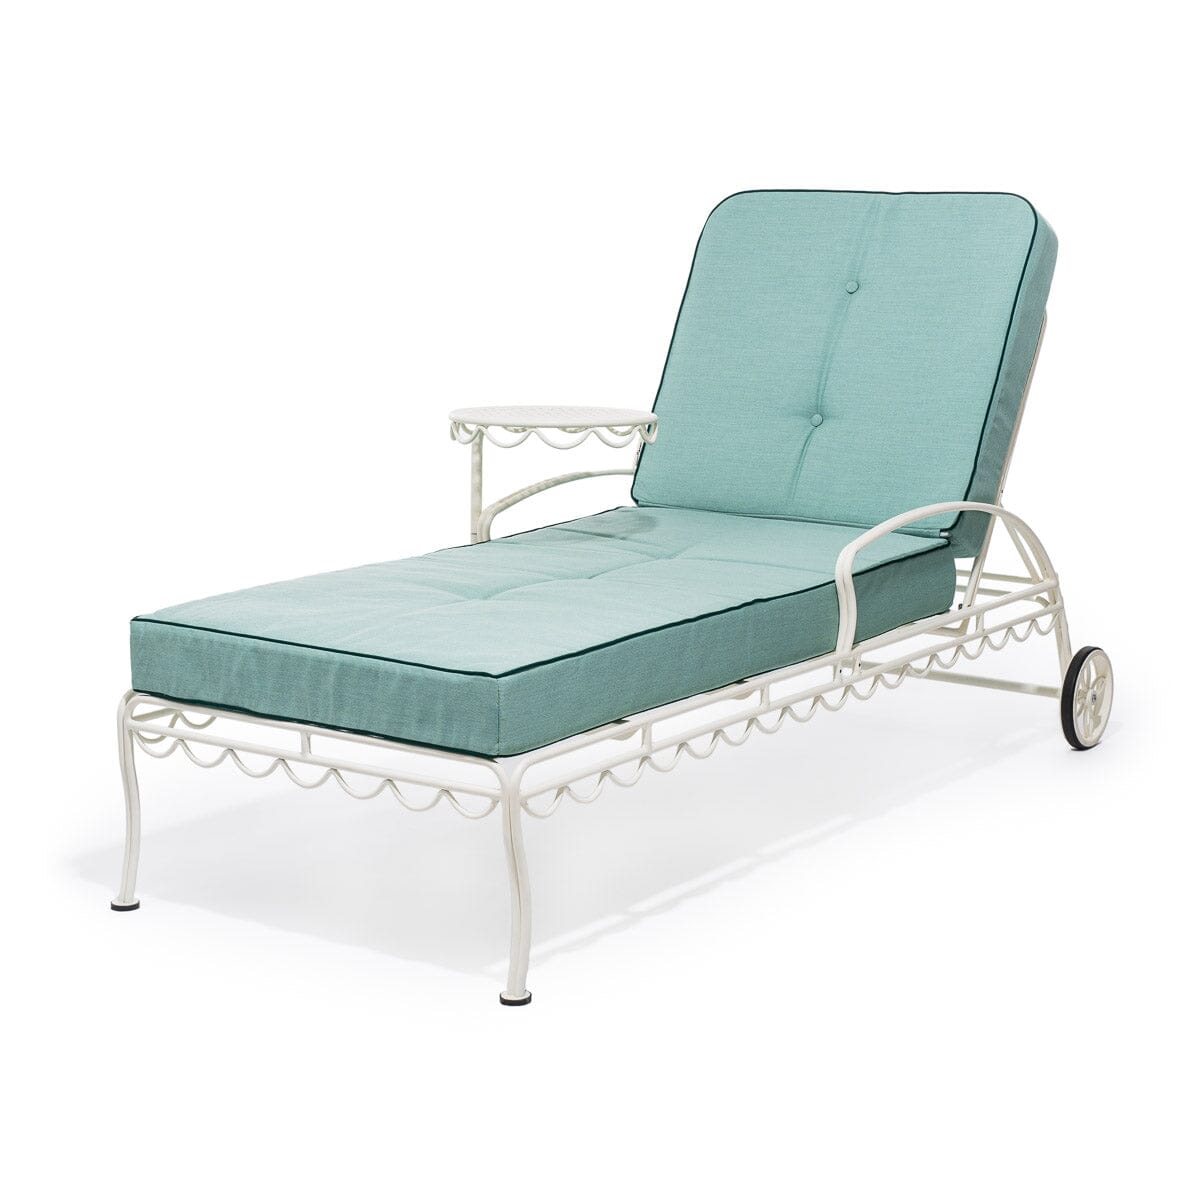 The Al Fresco Sun Lounger Cushion - Rivie Green Al Fresco Sun Lounger Cushions Business & Pleasure Co 